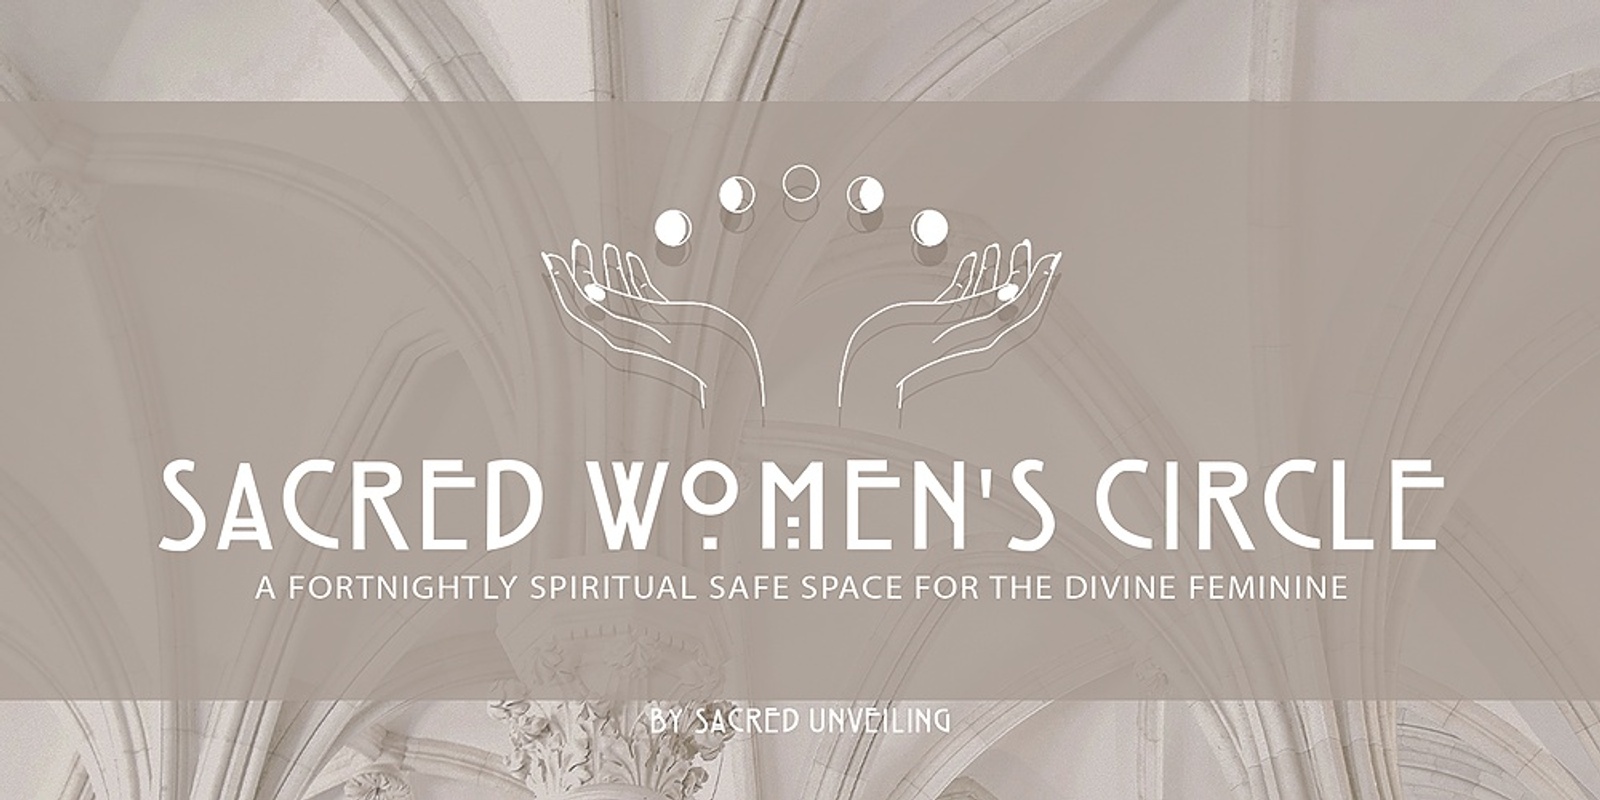 Sacred Women's Circle